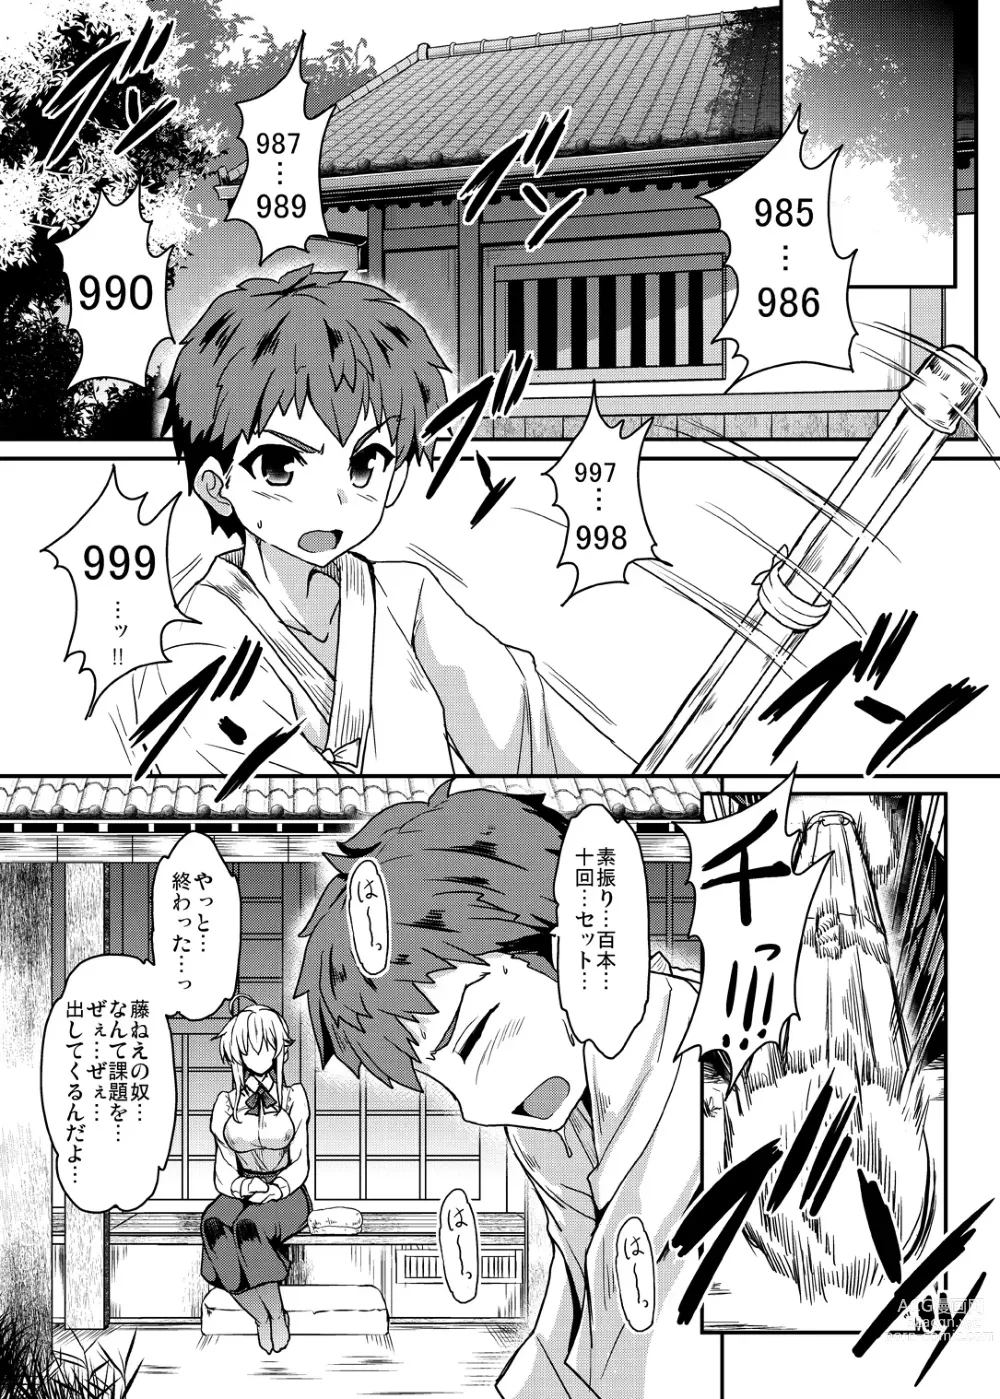 Page 7 of doujinshi Tonari no Chichiou-sama Memories Vol. 1